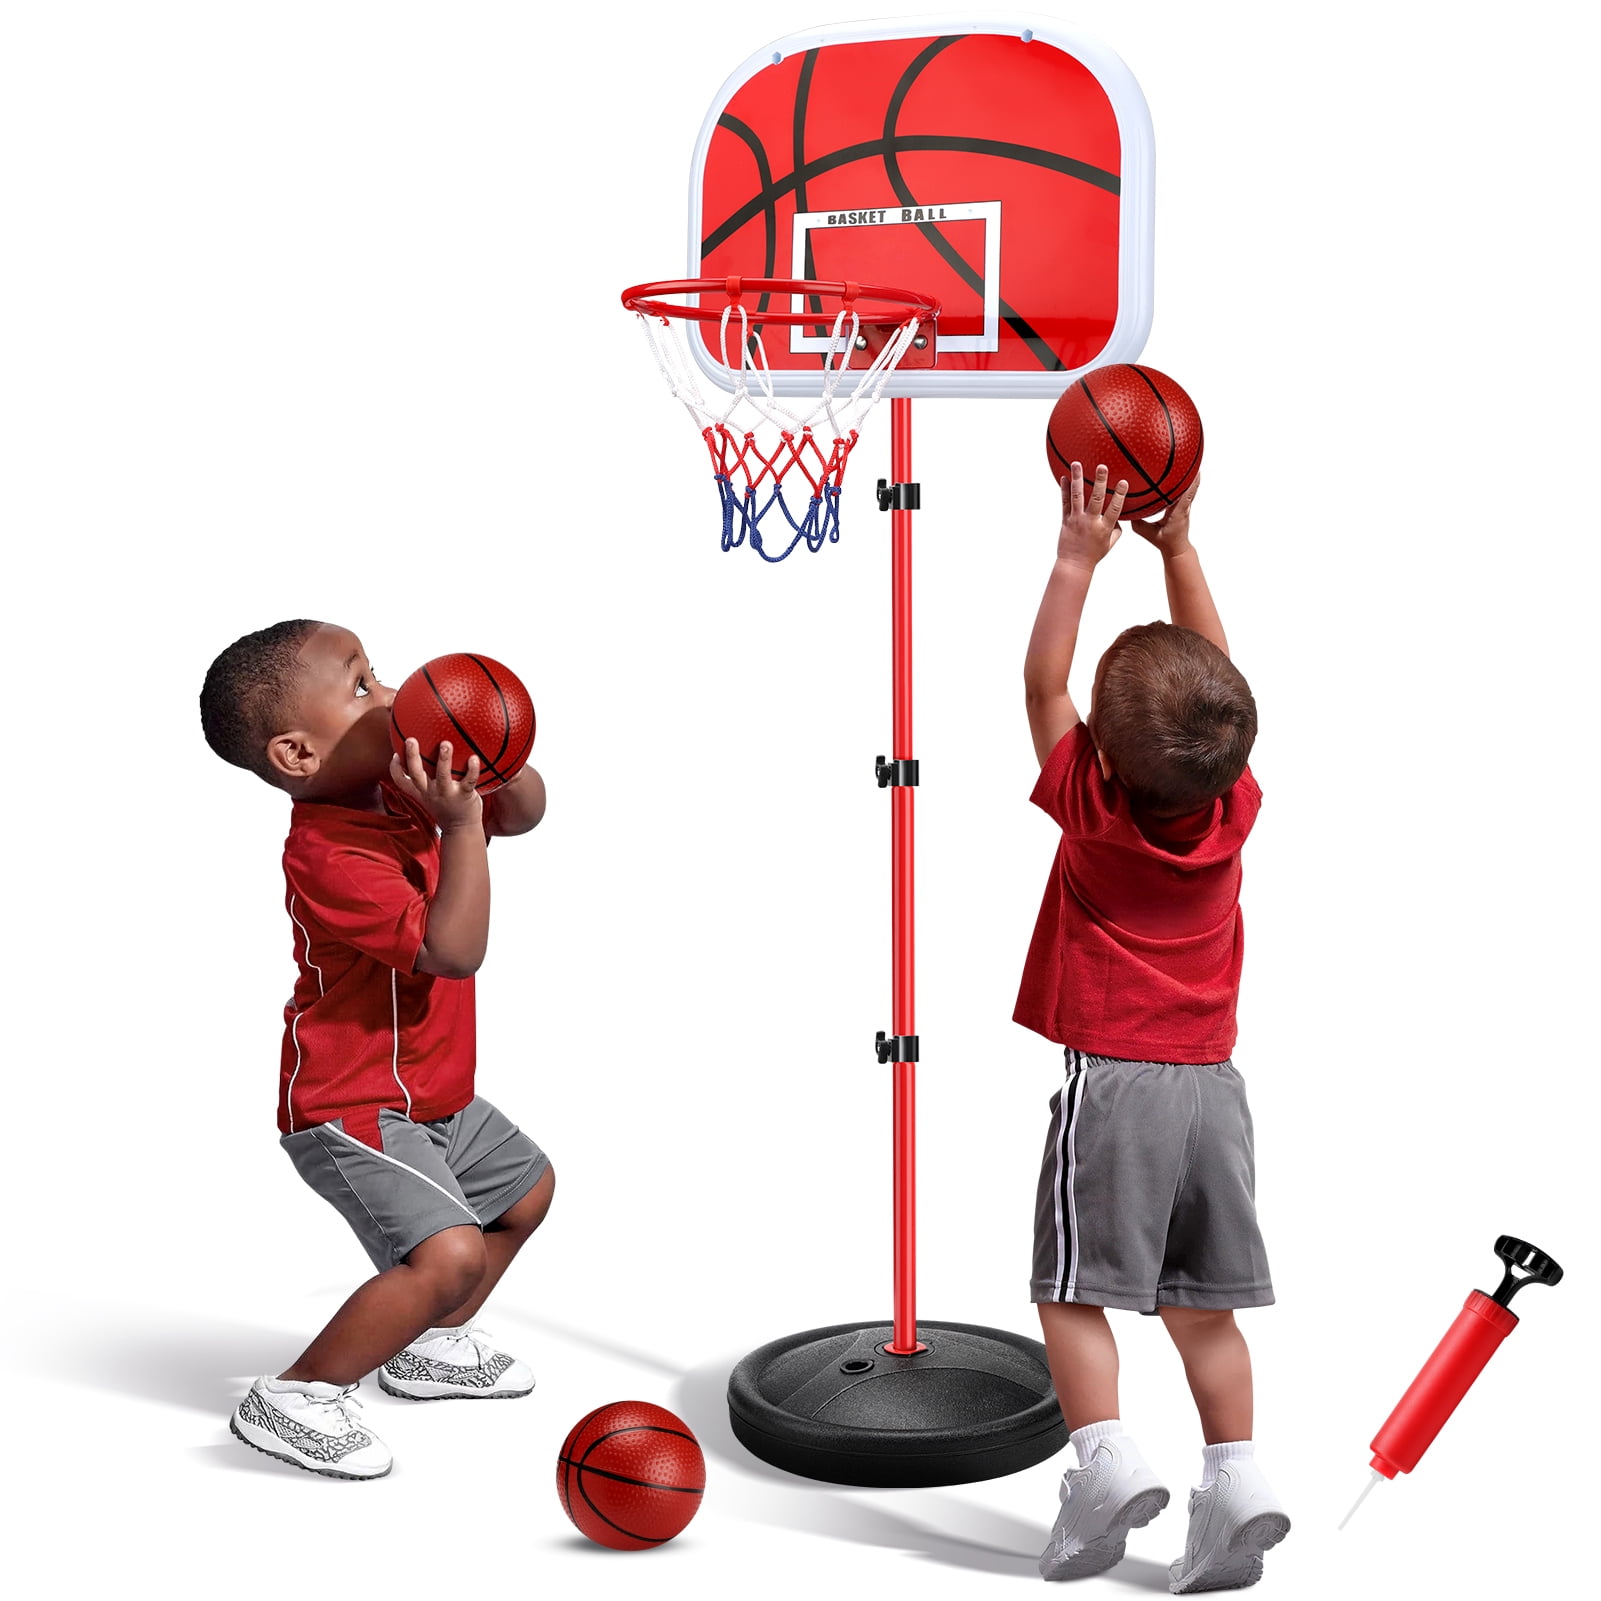 Ayieyill 可調節高度兒童室內籃球框